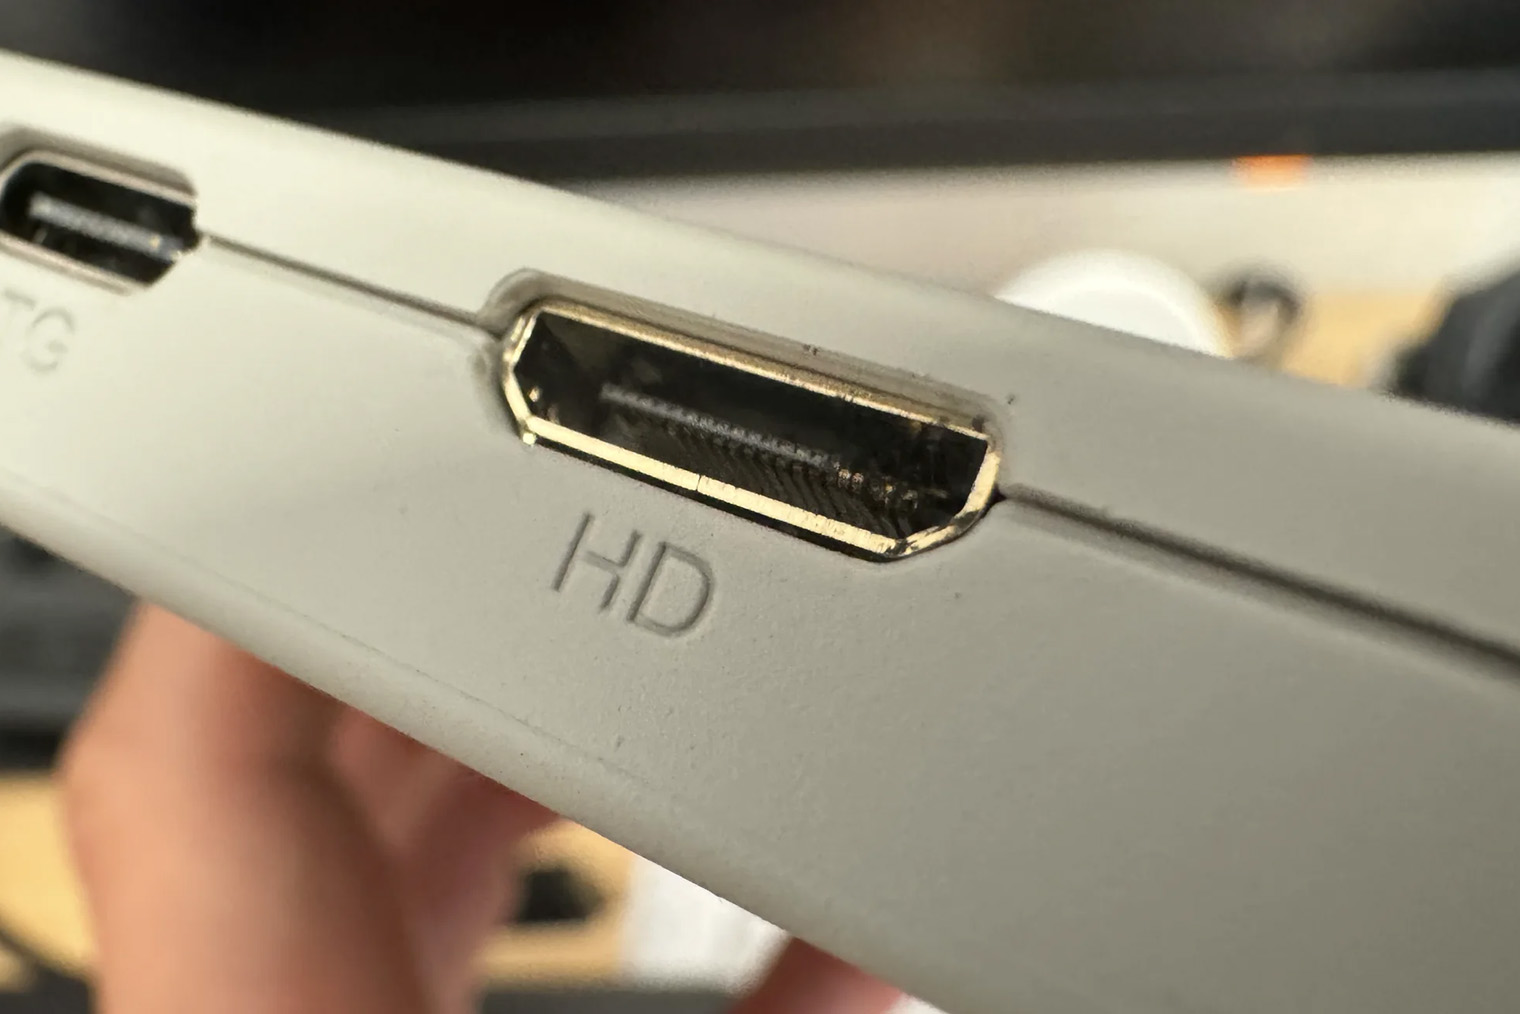 Mini HDMI порт сейчас встречается редко. Лучше избегайте его, если требуется вывод изображения высокого качества и частоты обновления. Источник: shancake1 / Reddit